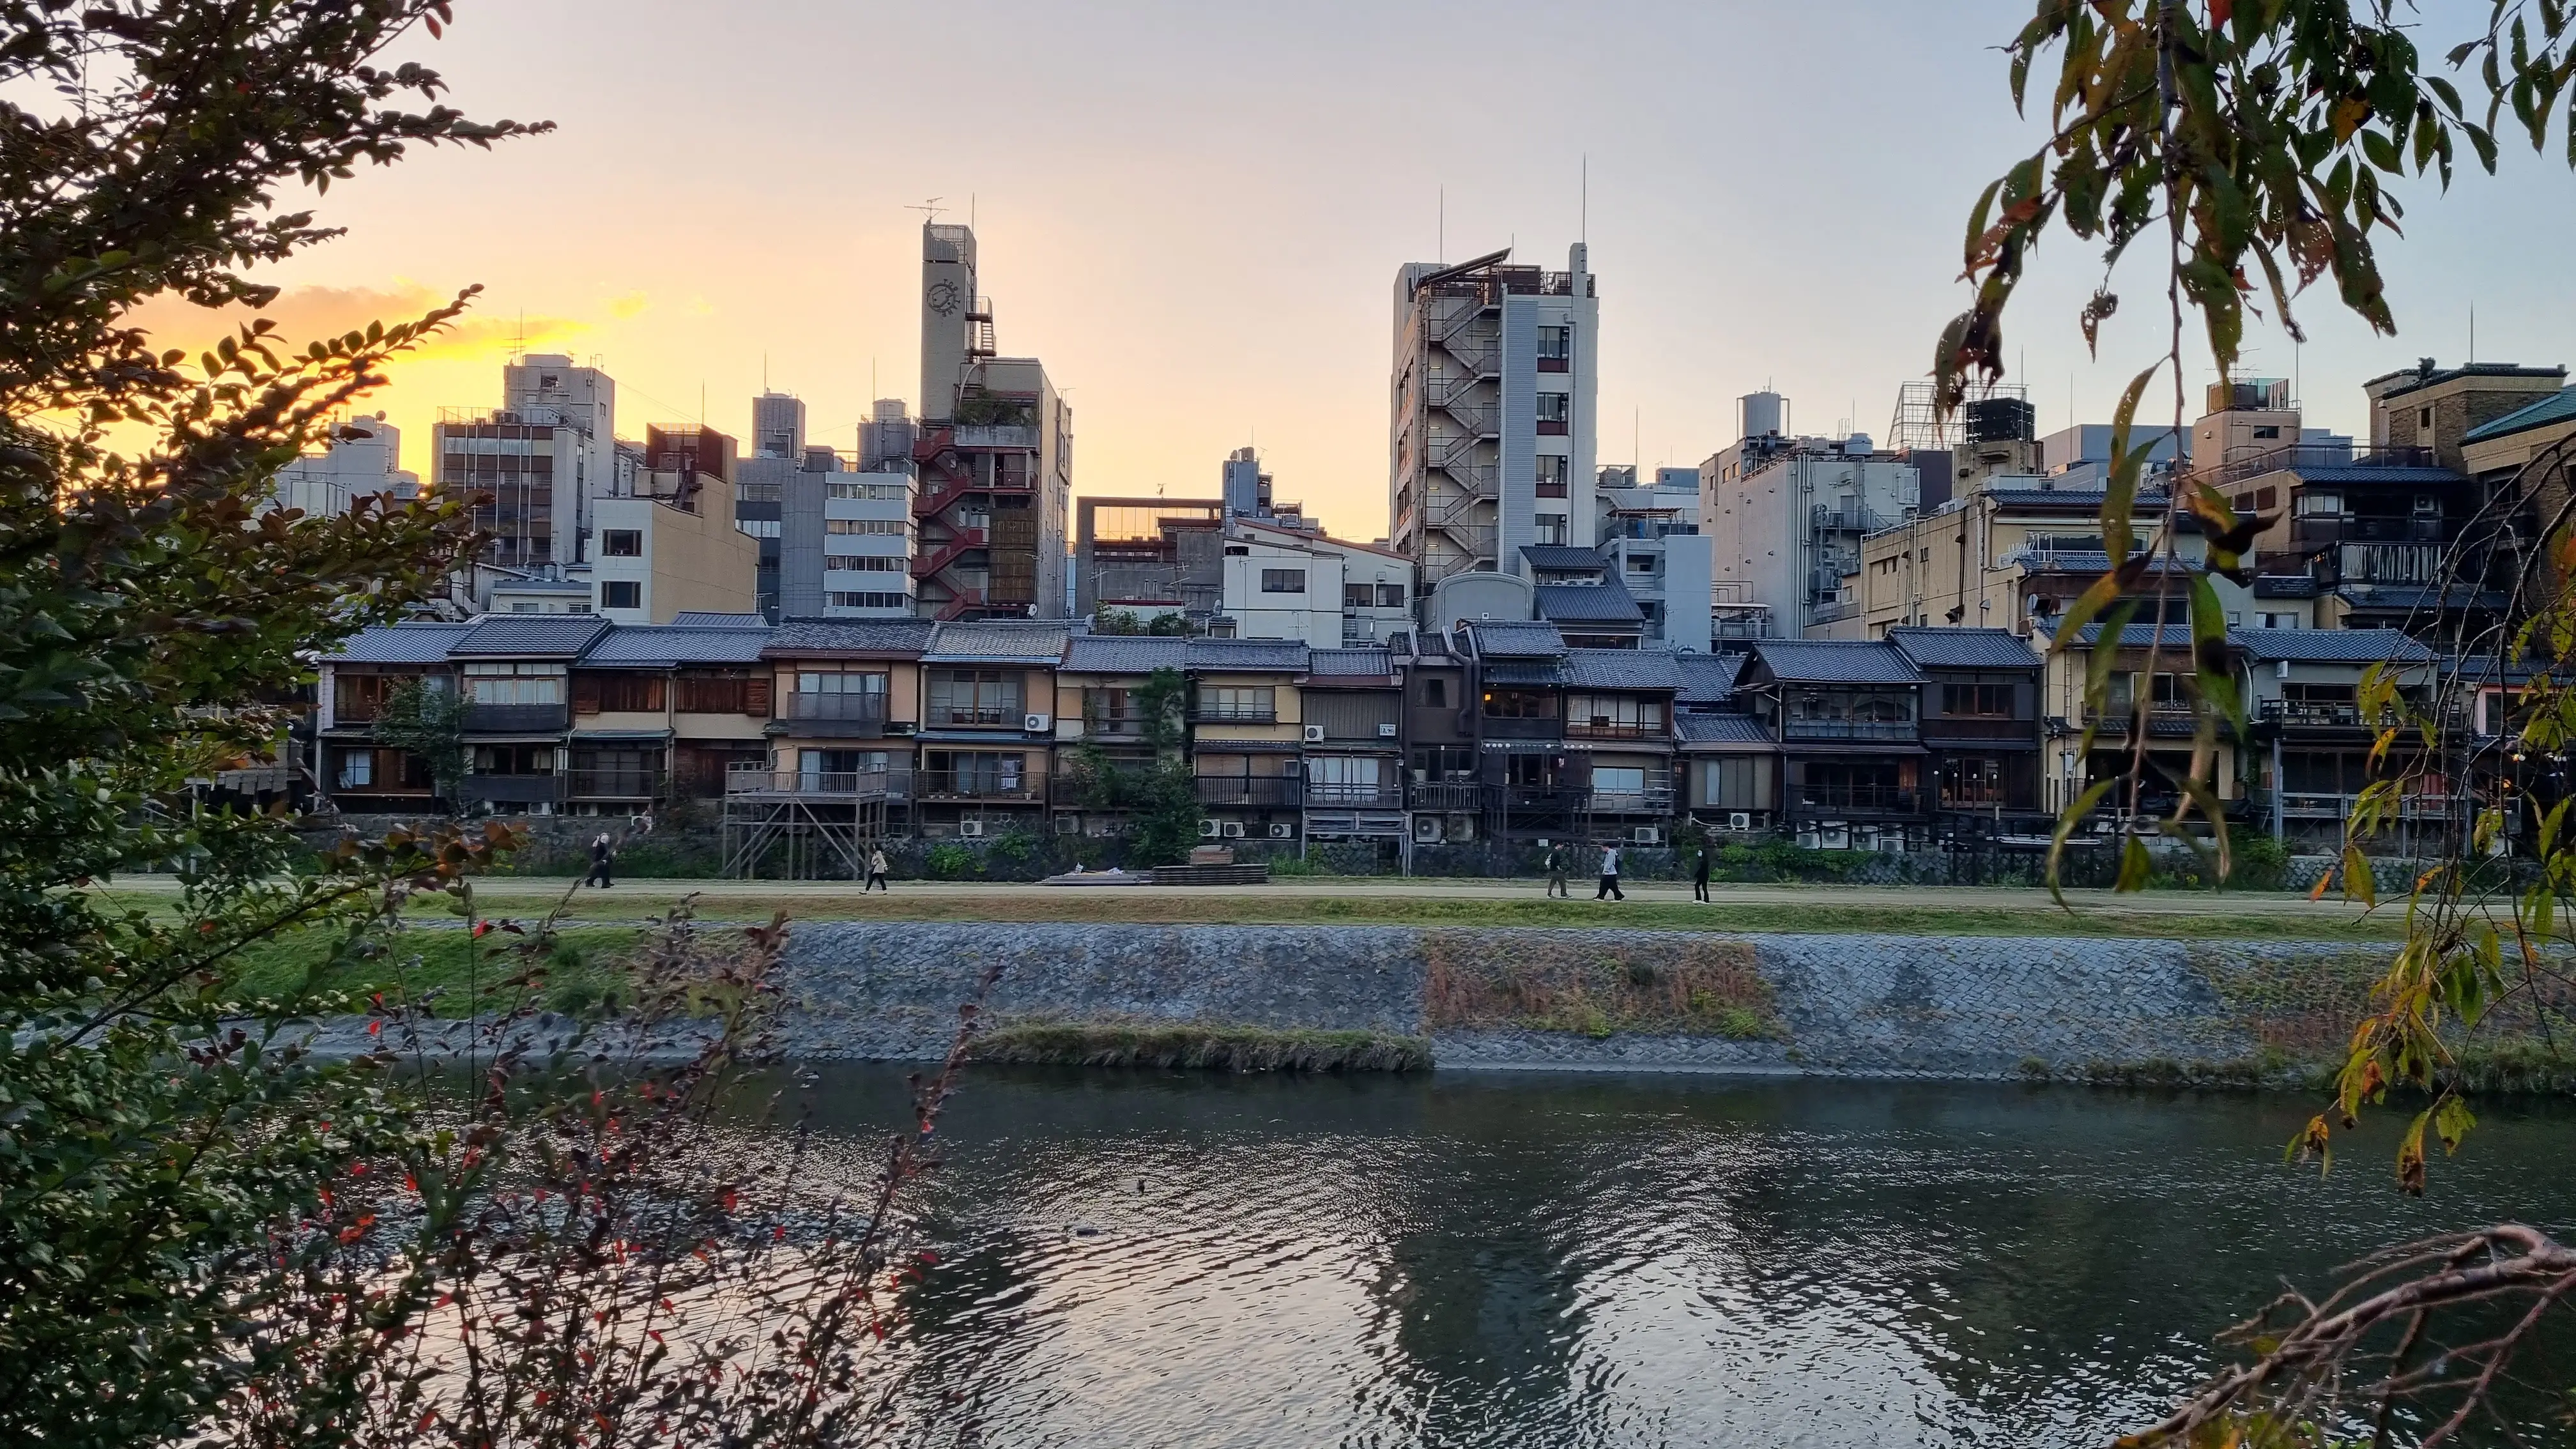 카모 강변의 일본 집을 보다 자세히 볼 수 있는 이미지입니다.